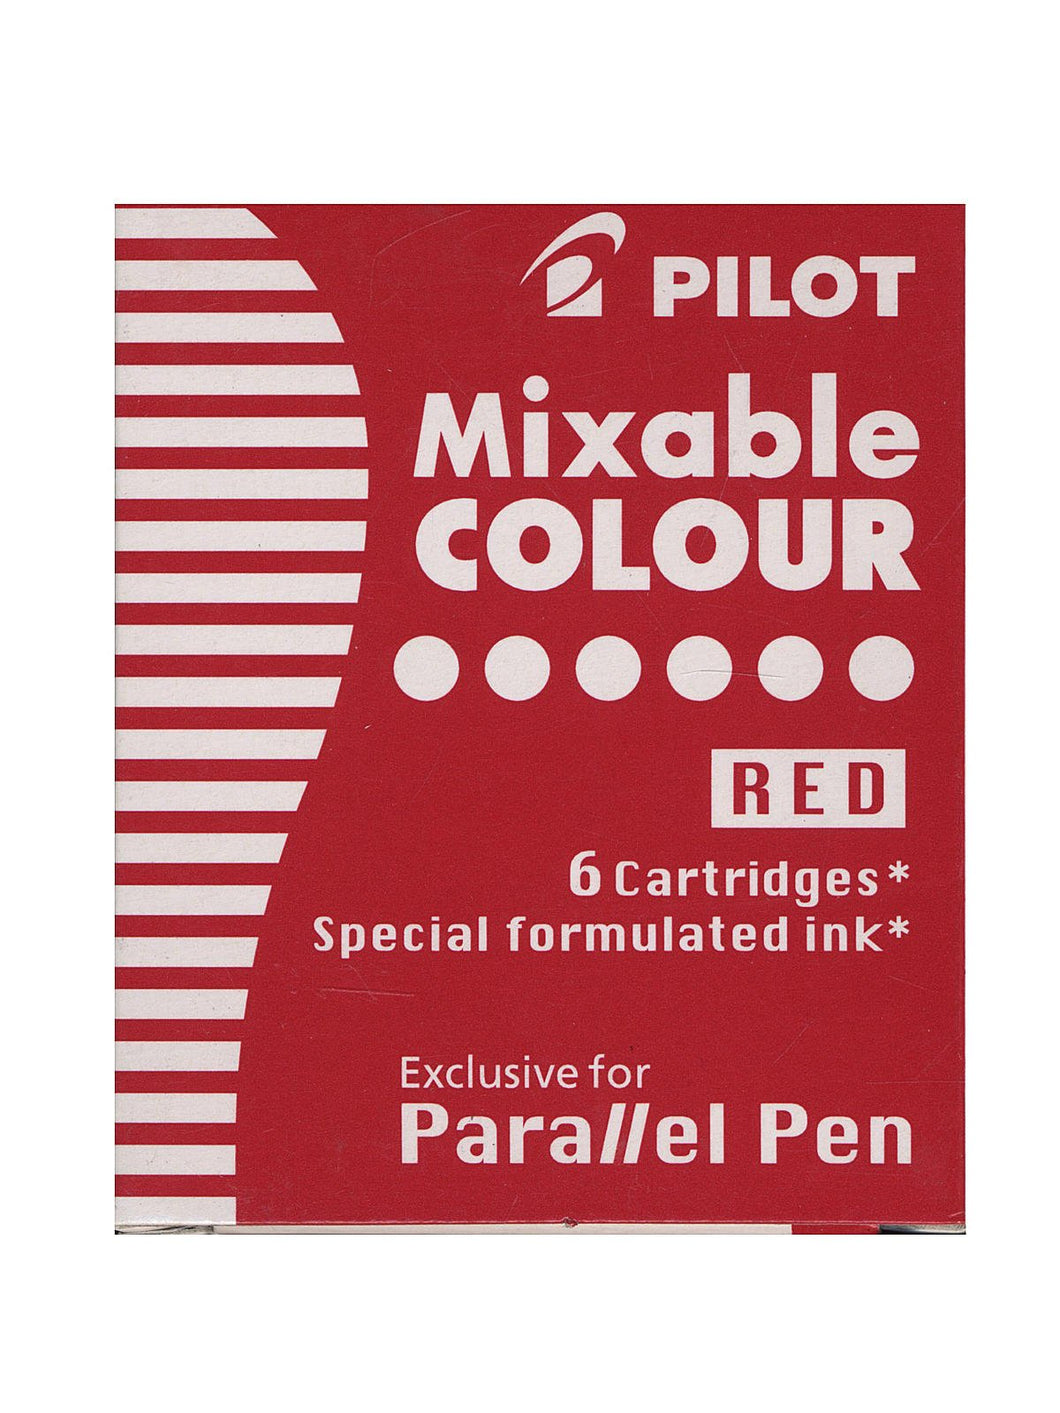 Pilot Mixable Parallel Pen Ink Cartridges 6pk